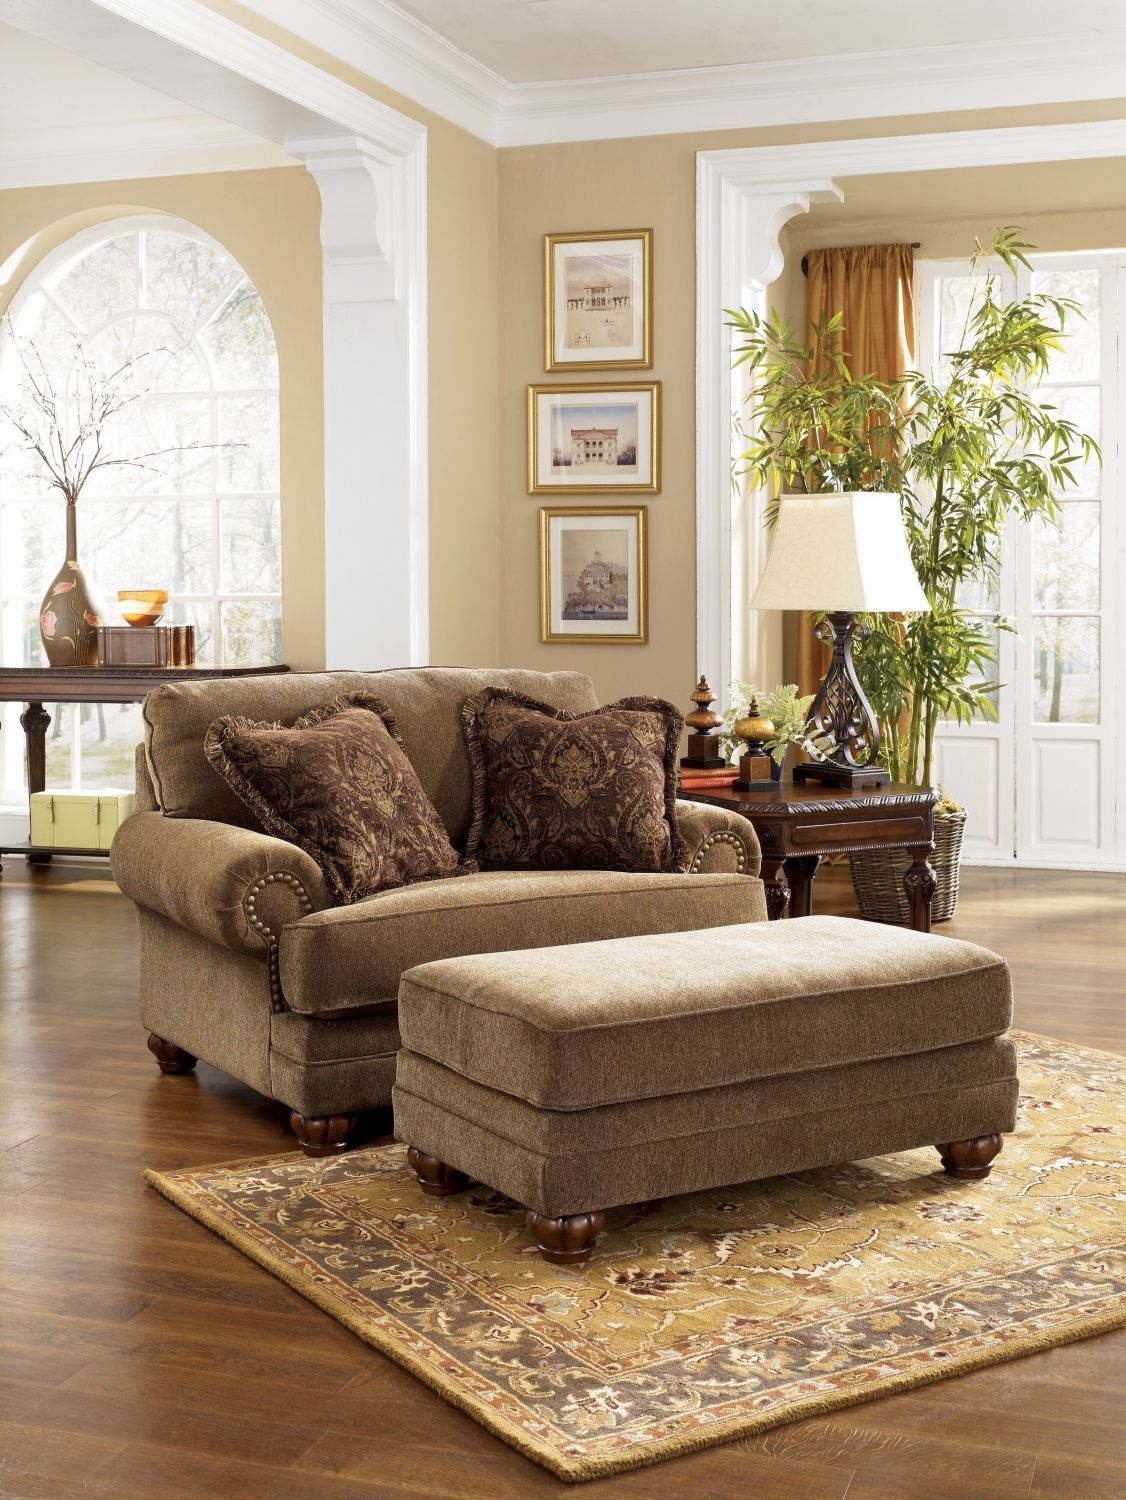 Old world living room furniture